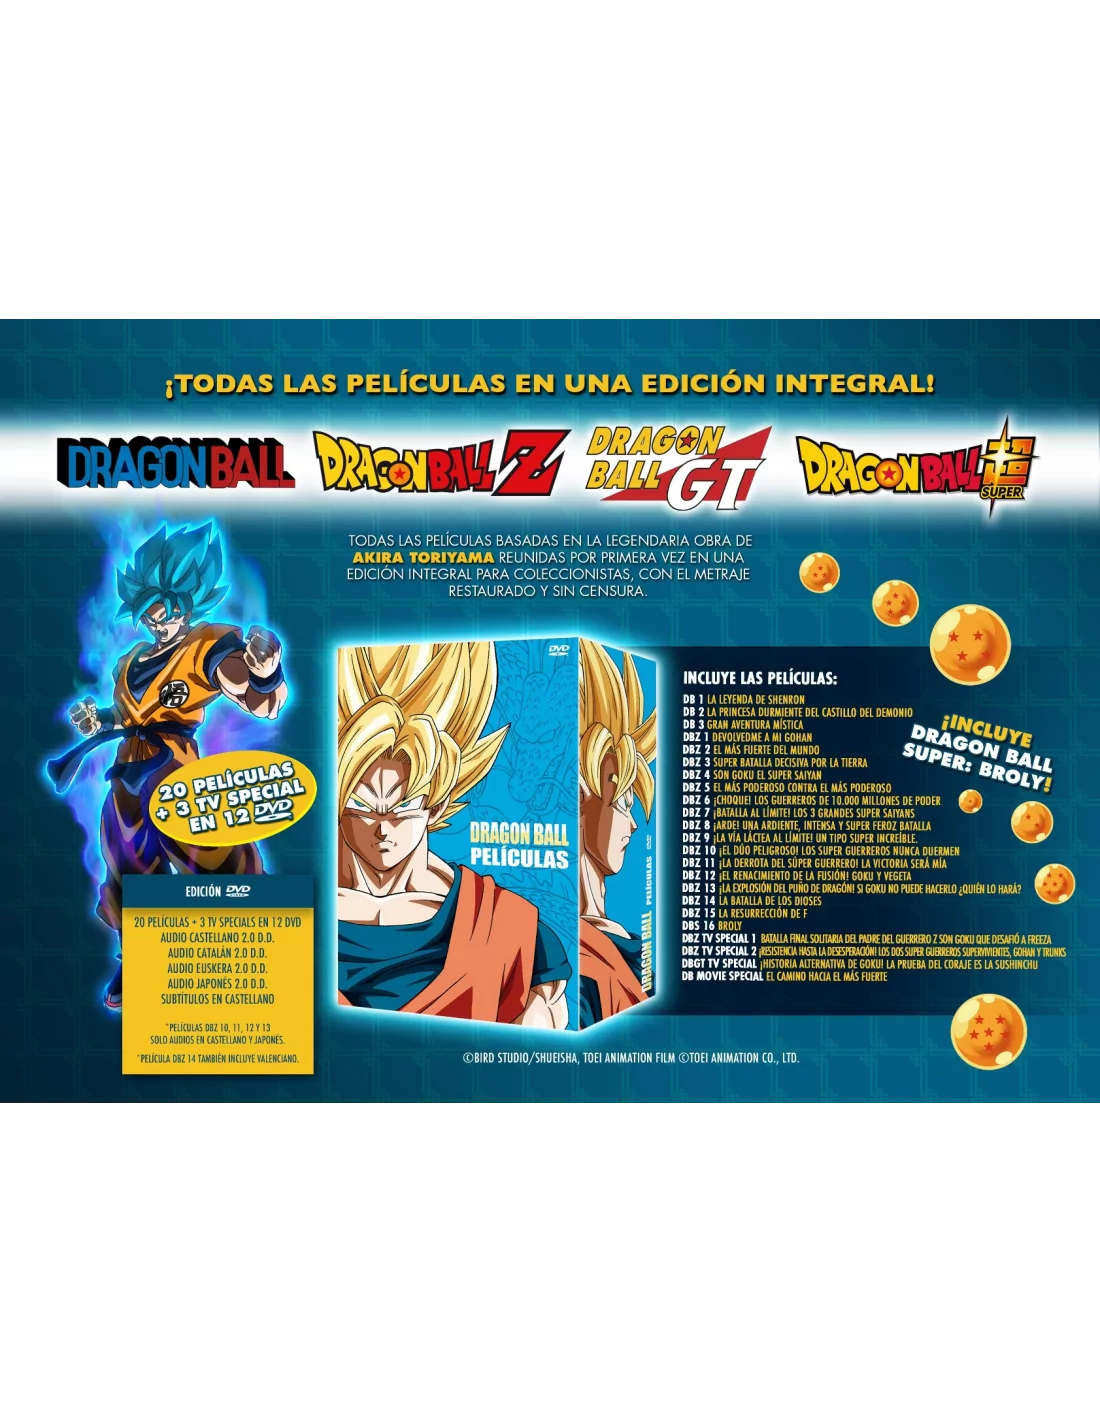 DRAGON BALL & DRAGON BALL Z LAS PELÍCULAS: COLECCIÓN COMPLETA DVD